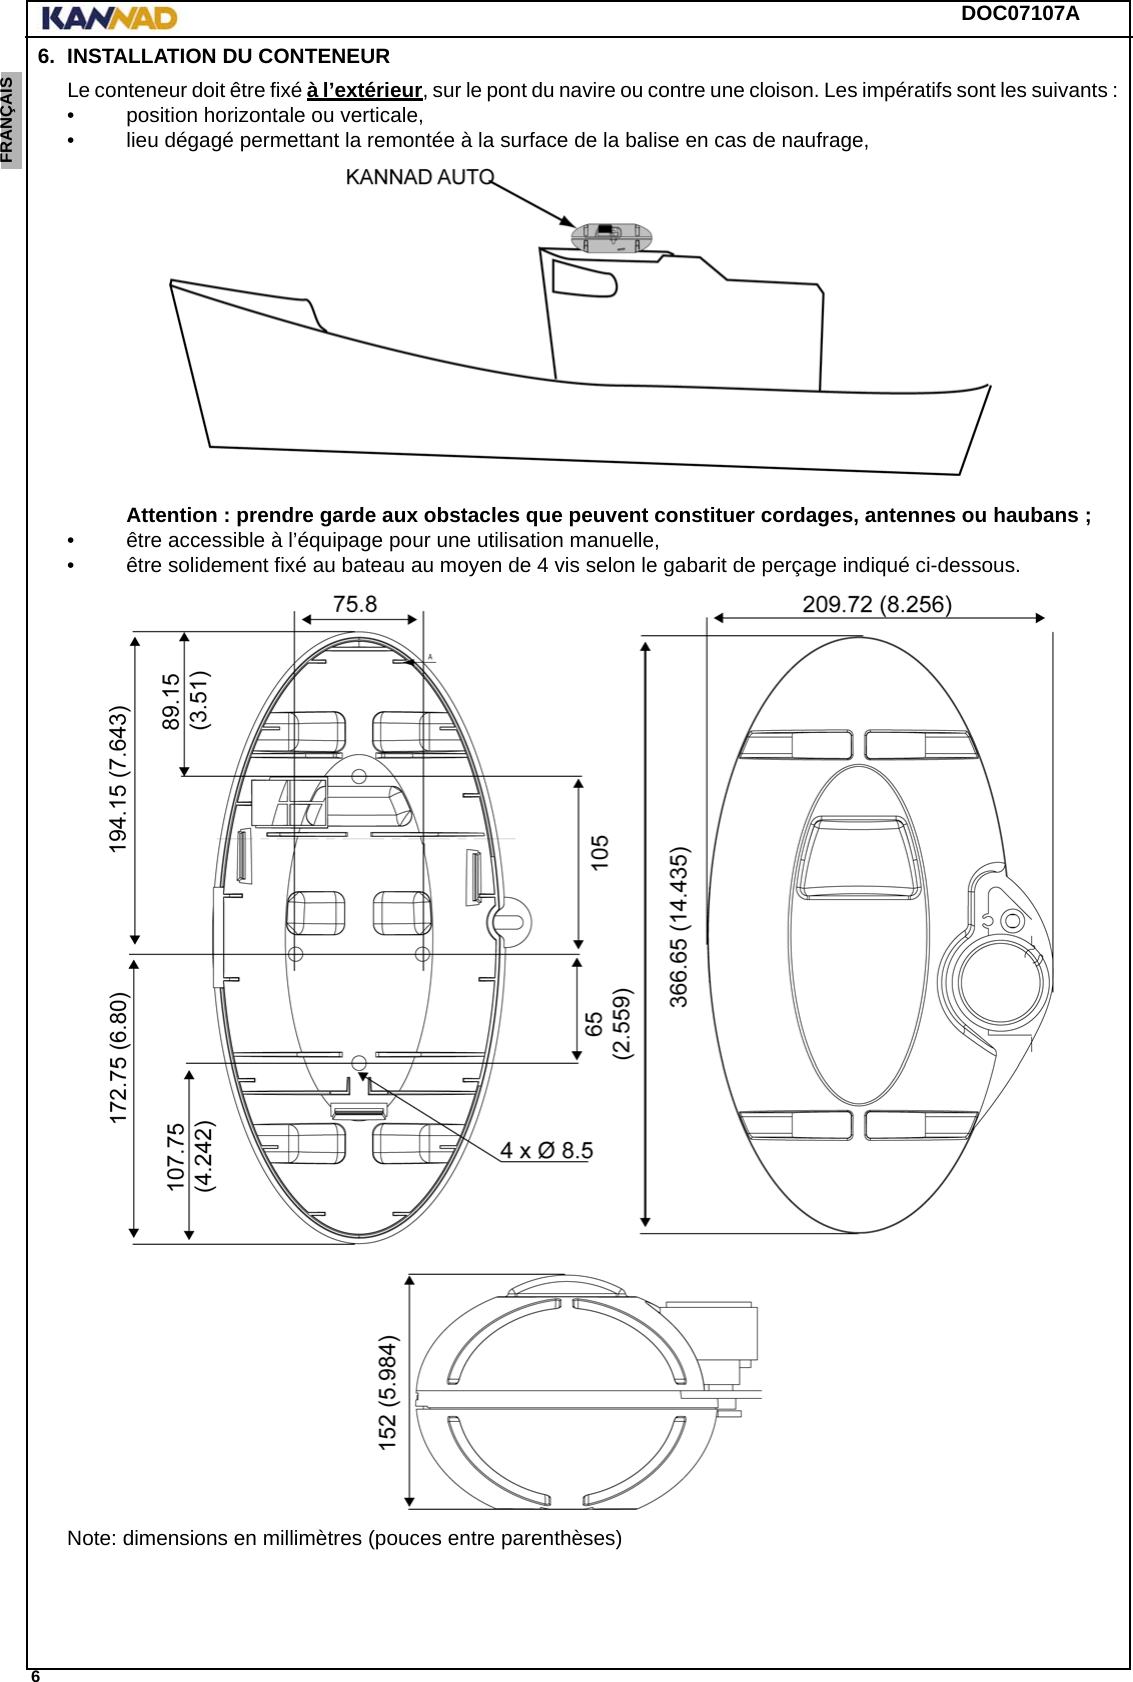 DOC07107A 6ENGLISH ESPAÑOL DEUTSCH  FRANÇAIS ITALIANO NEDERLANDS LANG7 LANG8 LANG9 LANG10 LANG11 LANG12 6. INSTALLATION DU CONTENEURLe conteneur doit être fixé à l’extérieur, sur le pont du navire ou contre une cloison. Les impératifs sont les suivants : • position horizontale ou verticale, • lieu dégagé permettant la remontée à la surface de la balise en cas de naufrage, Attention : prendre garde aux obstacles que peuvent constituer cordages, antennes ou haubans ;• être accessible à l’équipage pour une utilisation manuelle,• être solidement fixé au bateau au moyen de 4 vis selon le gabarit de perçage indiqué ci-dessous.Note: dimensions en millimètres (pouces entre parenthèses)